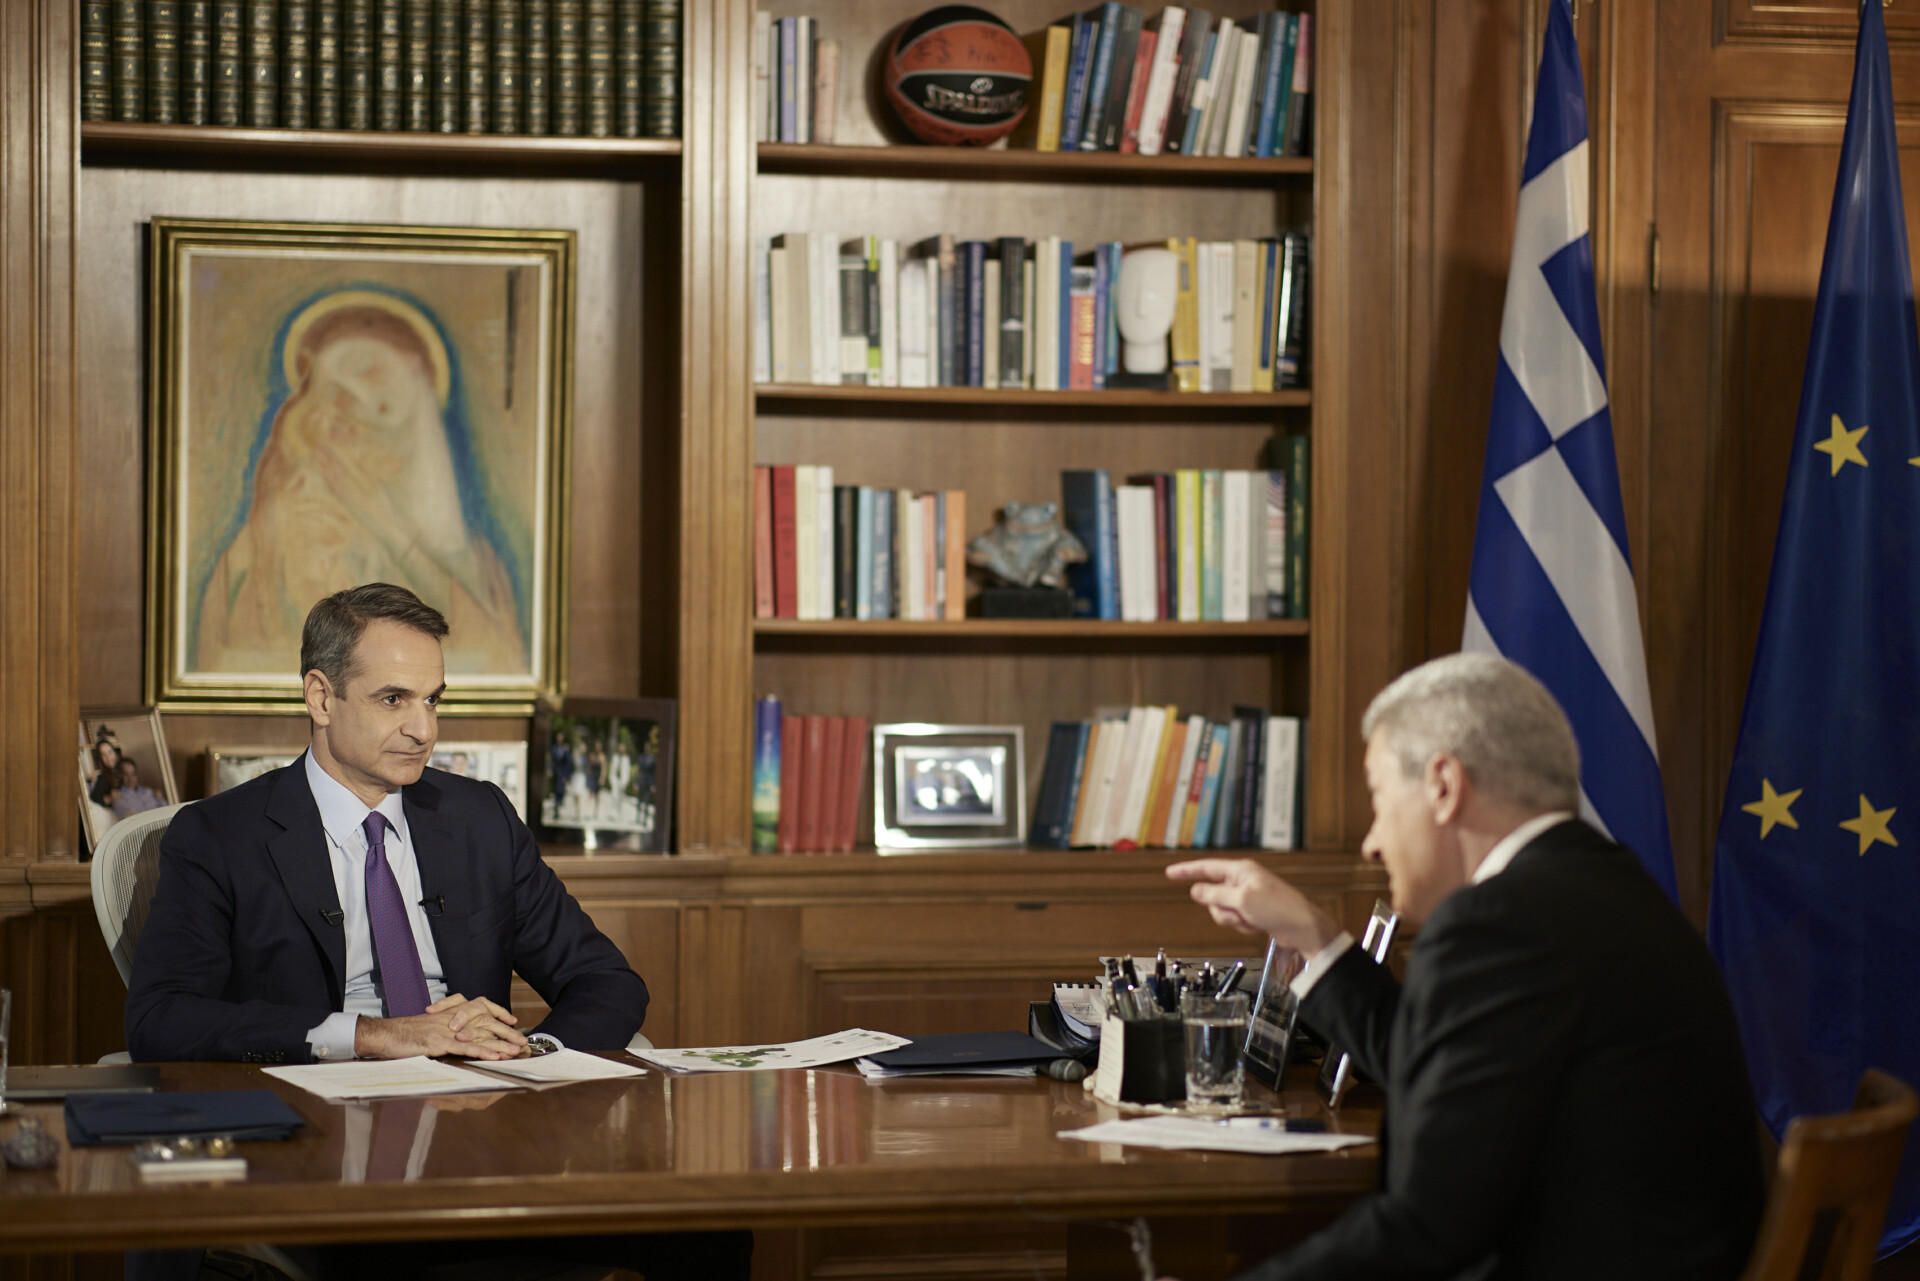 Η συνέντευξη του Κυριάκου Μητσοτάκη στον ΑΝΤ1 και τον Νίκο Χατζηνικολάου © Γραφείο Τύπου Πρωθυπουργού